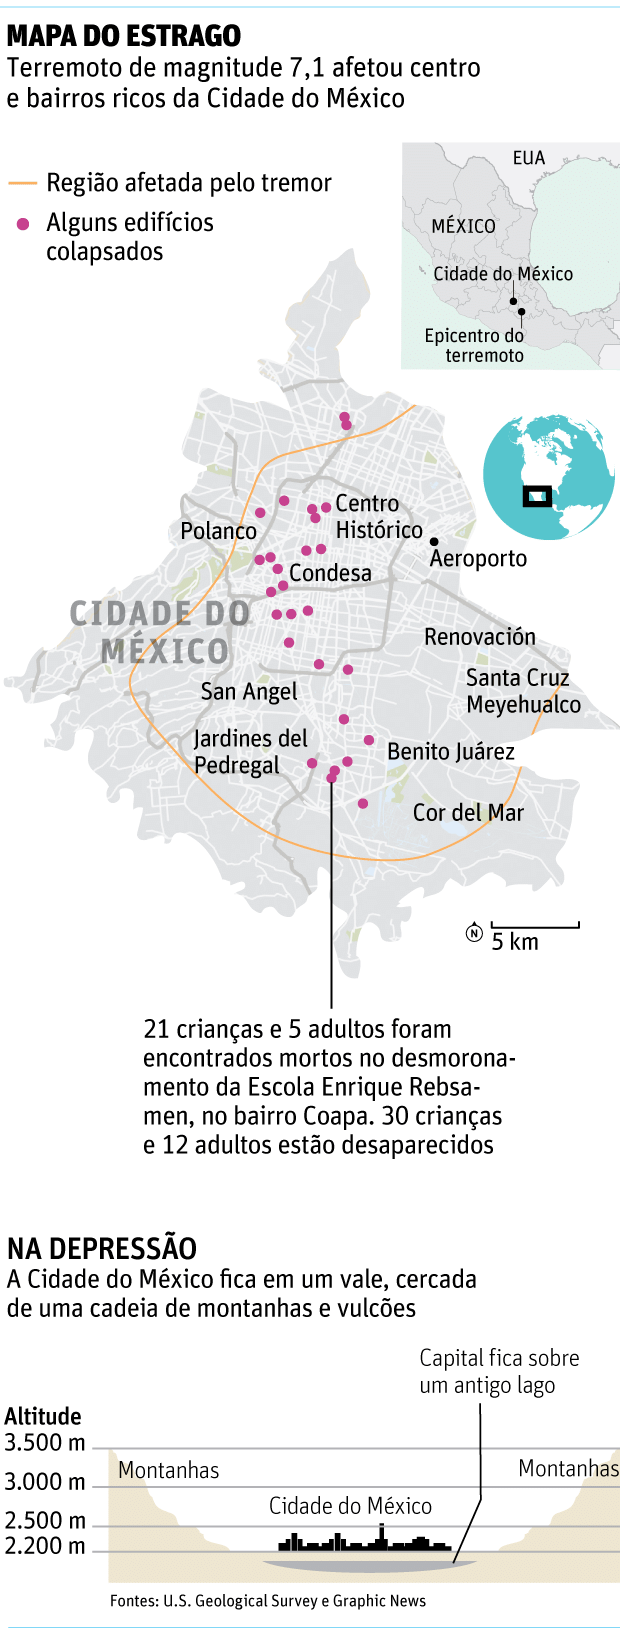 Mapa do estrago - terremoto na cidade do Mxico